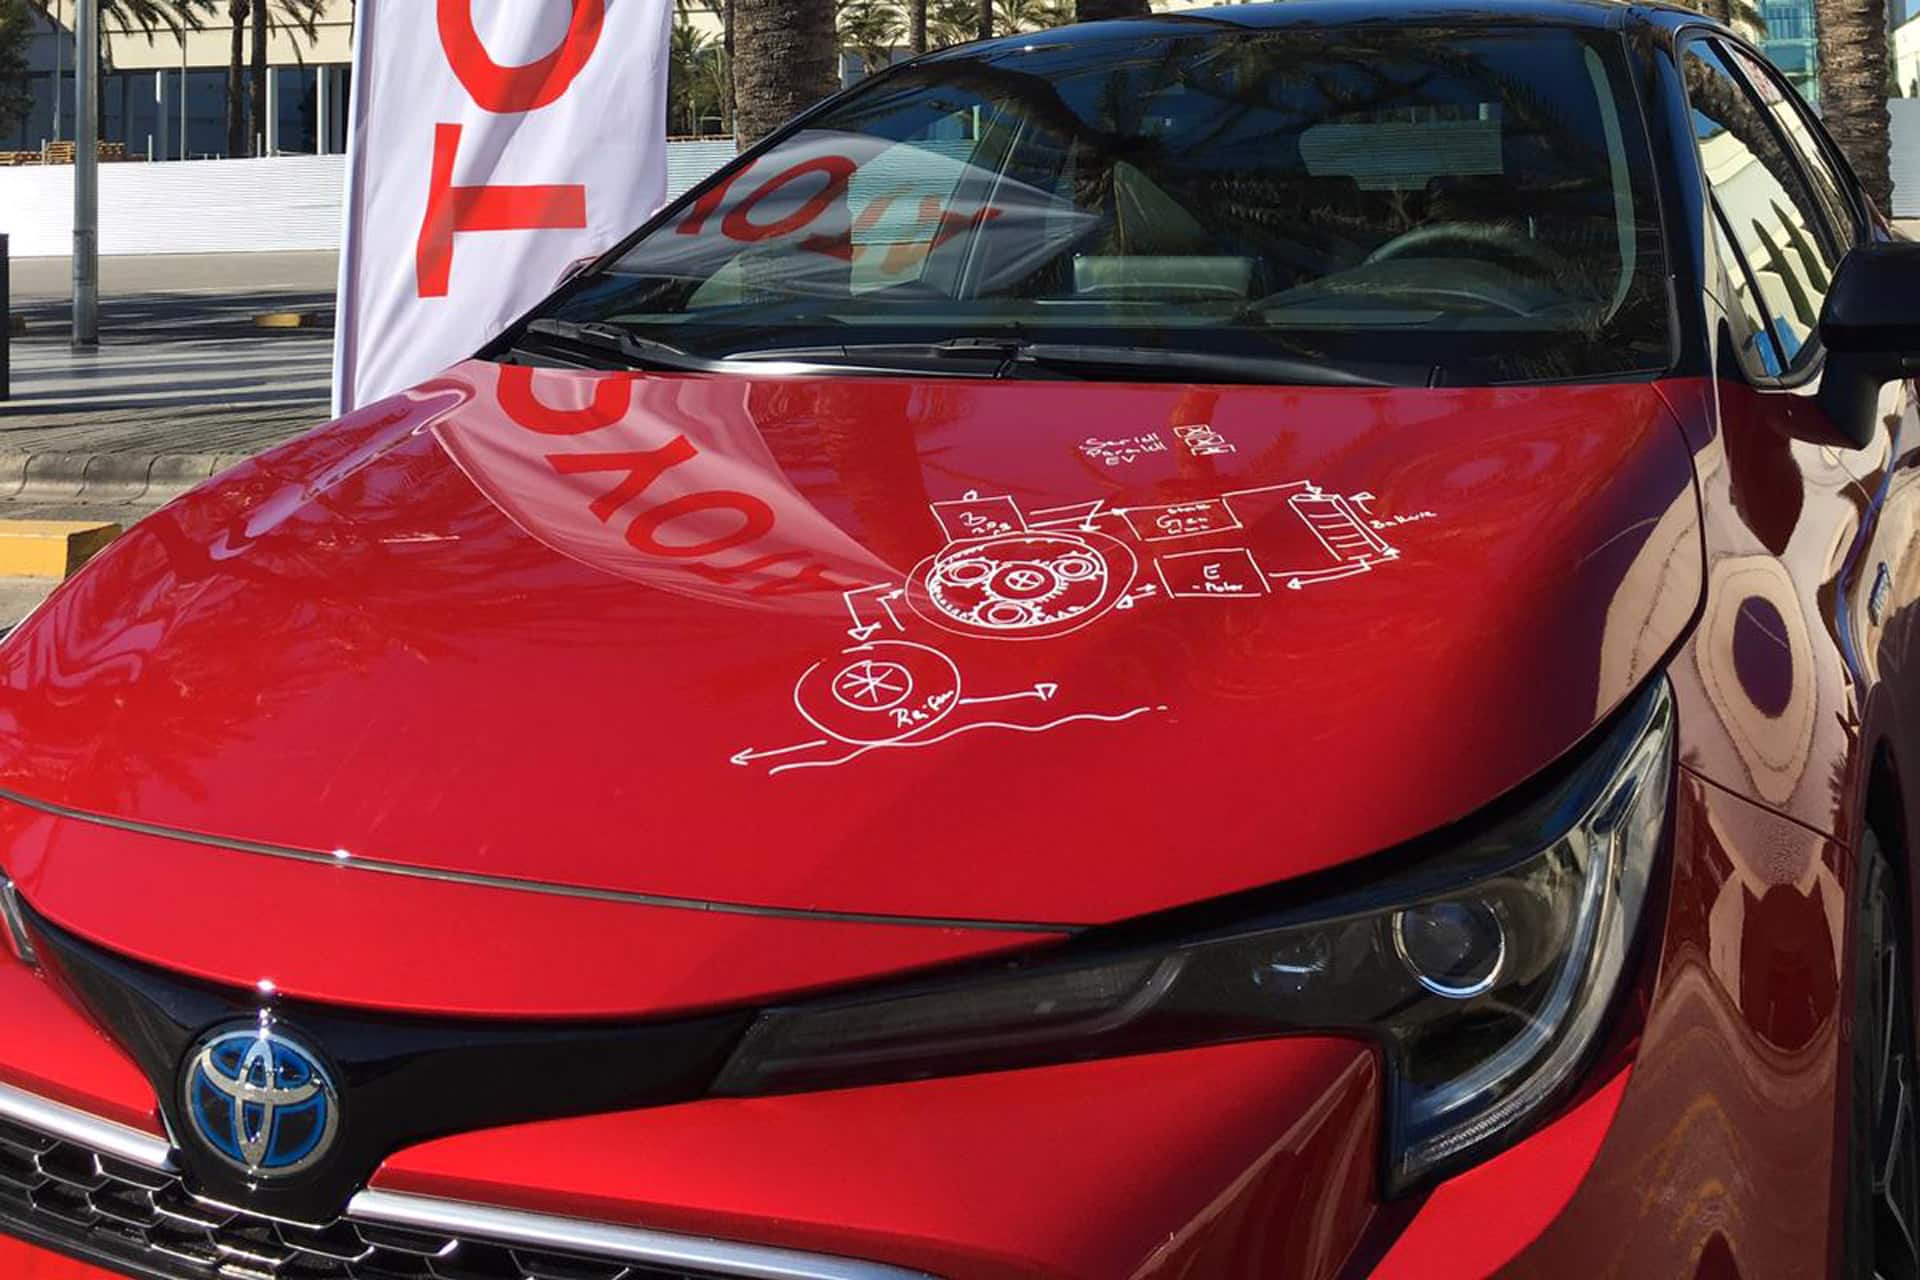 Toyota-Corolla-Launch-event-in-Mallorca-6